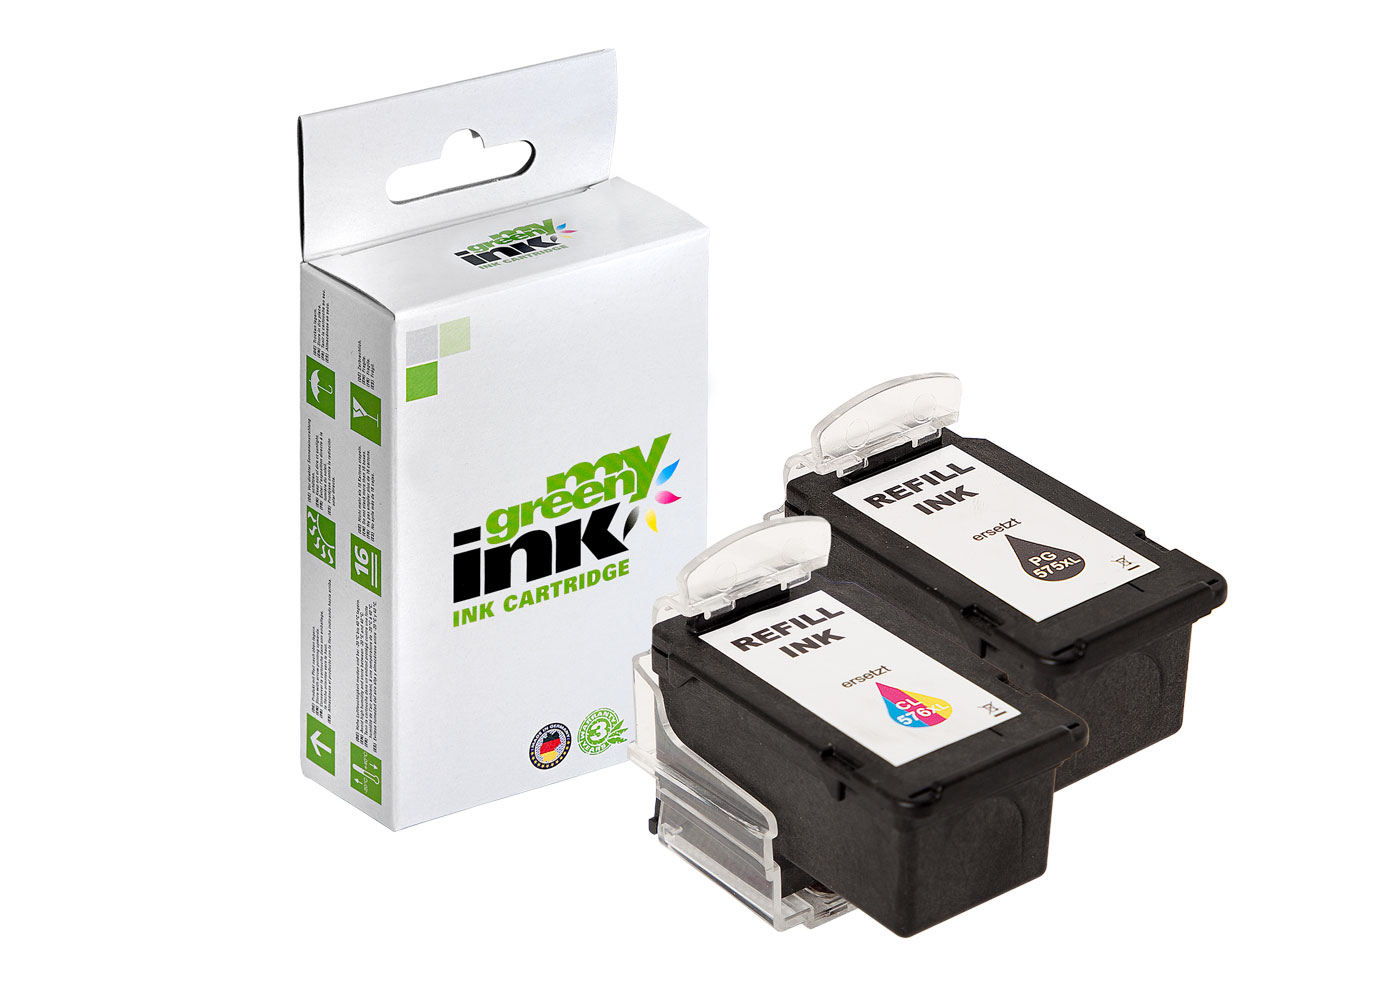 Refill Tintenpatronen passend für Canon Pixma TR 4750, TS 3550 u. a.